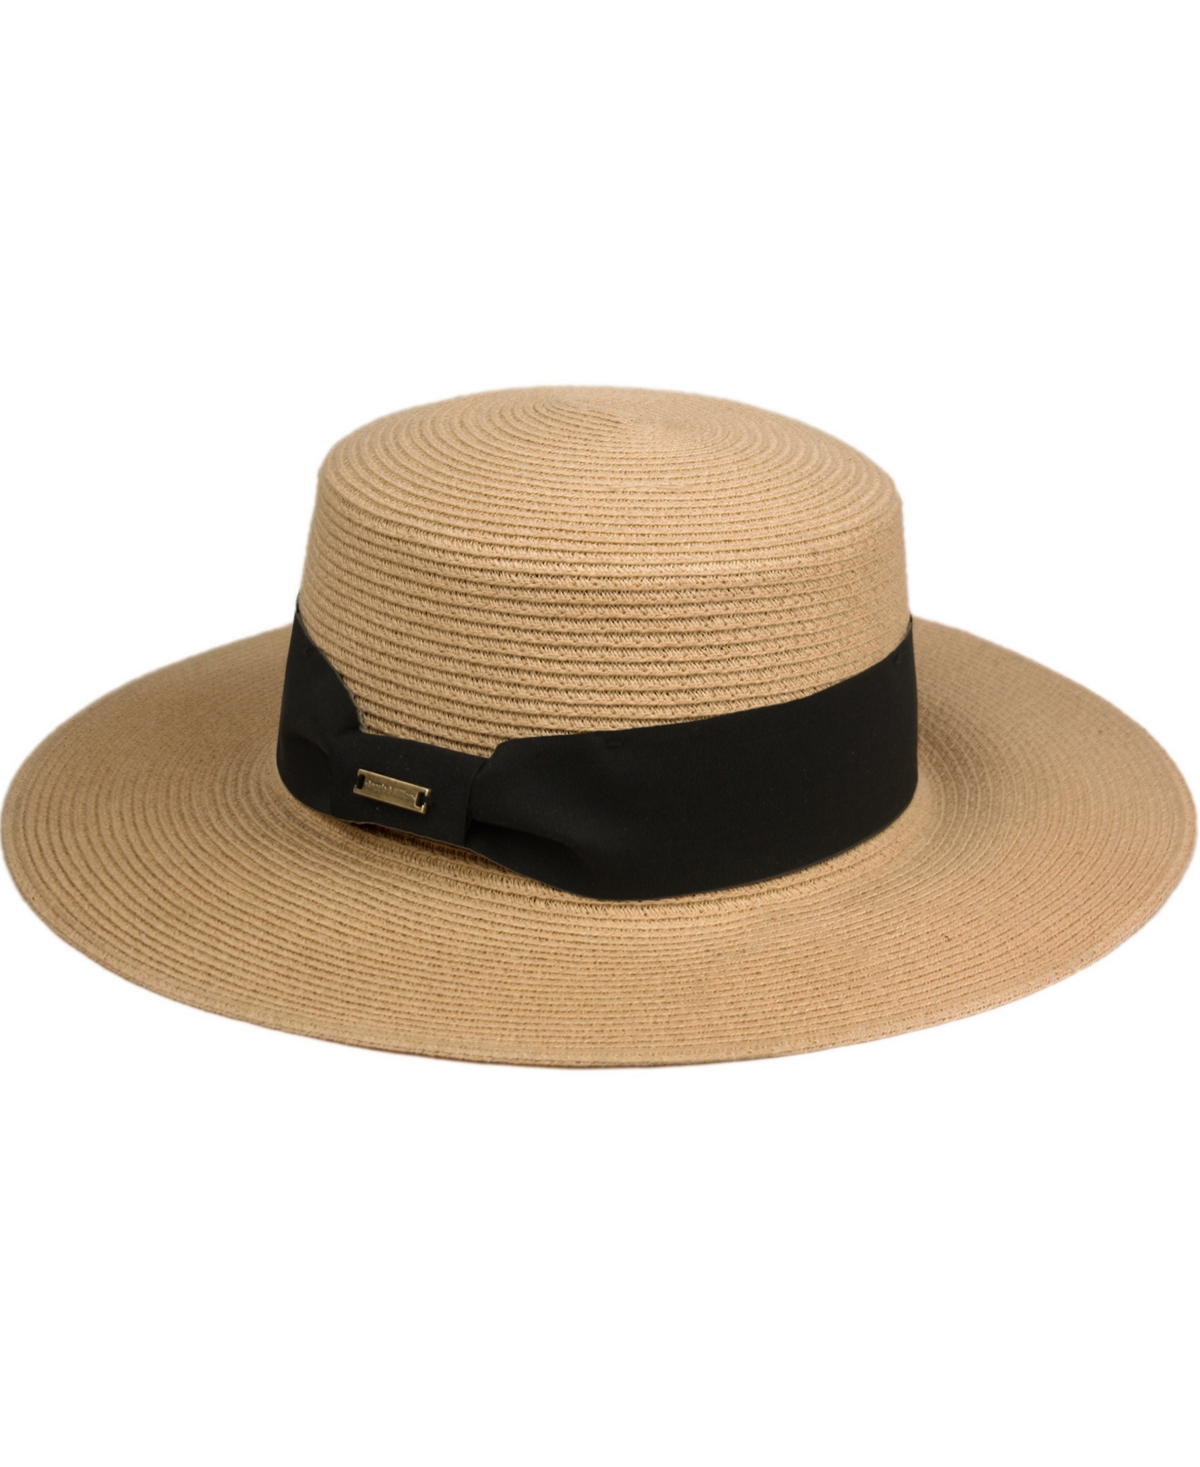 Angela & William Unisex Flat Brim Boater Straw Sun Hat In Brown